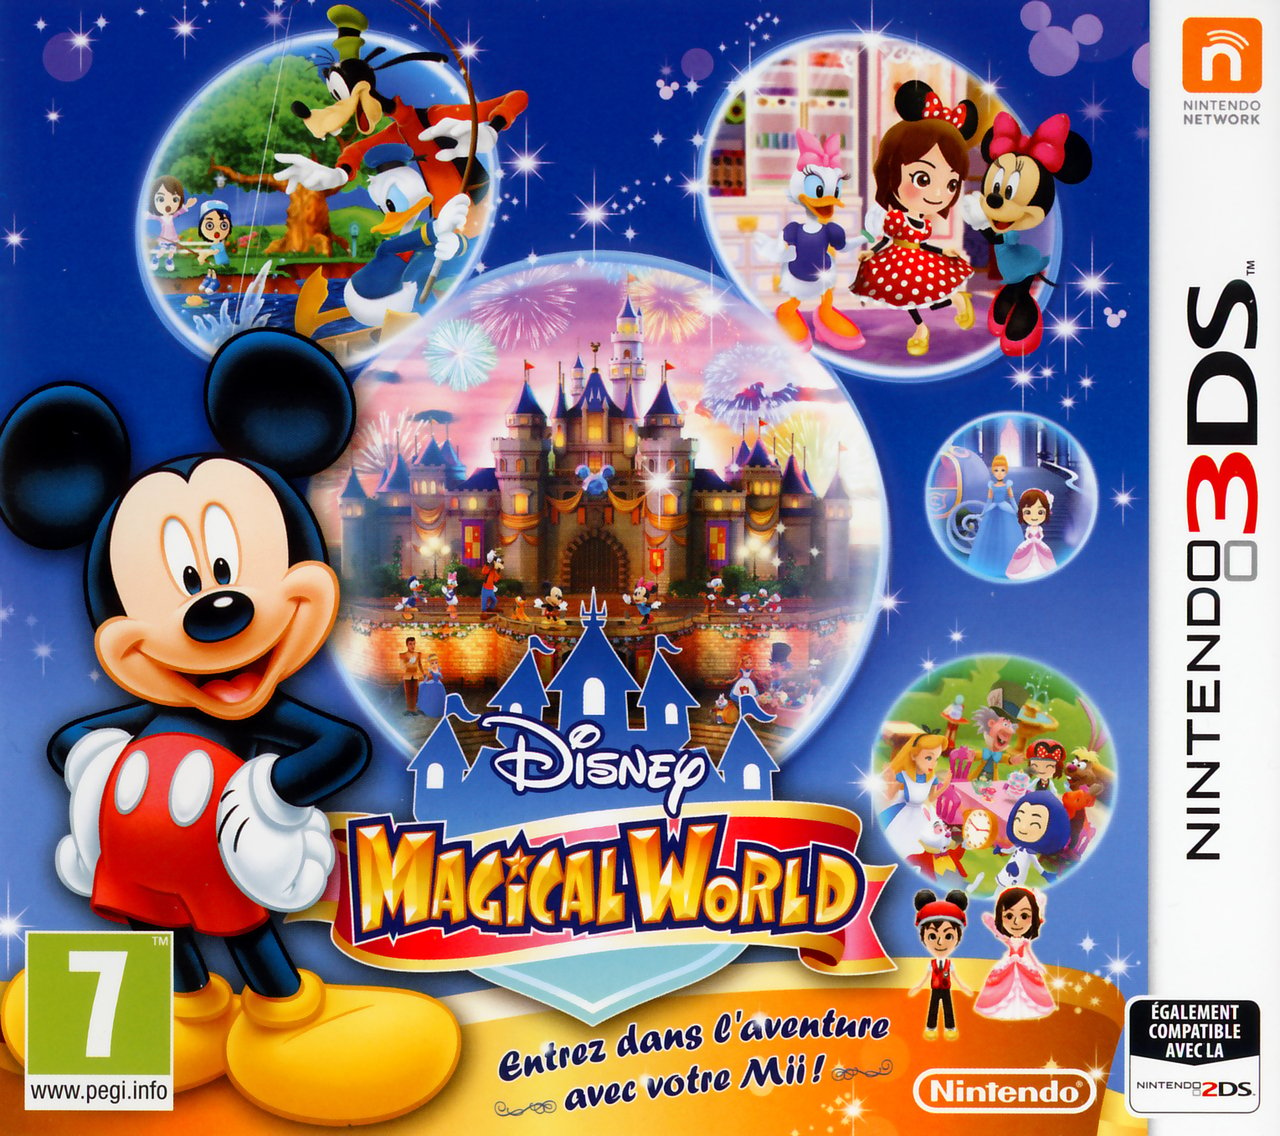 Disney Magical World sur Nintendo 3DS - jeuxvideo.com - 1280 x 1136 jpeg 579kB